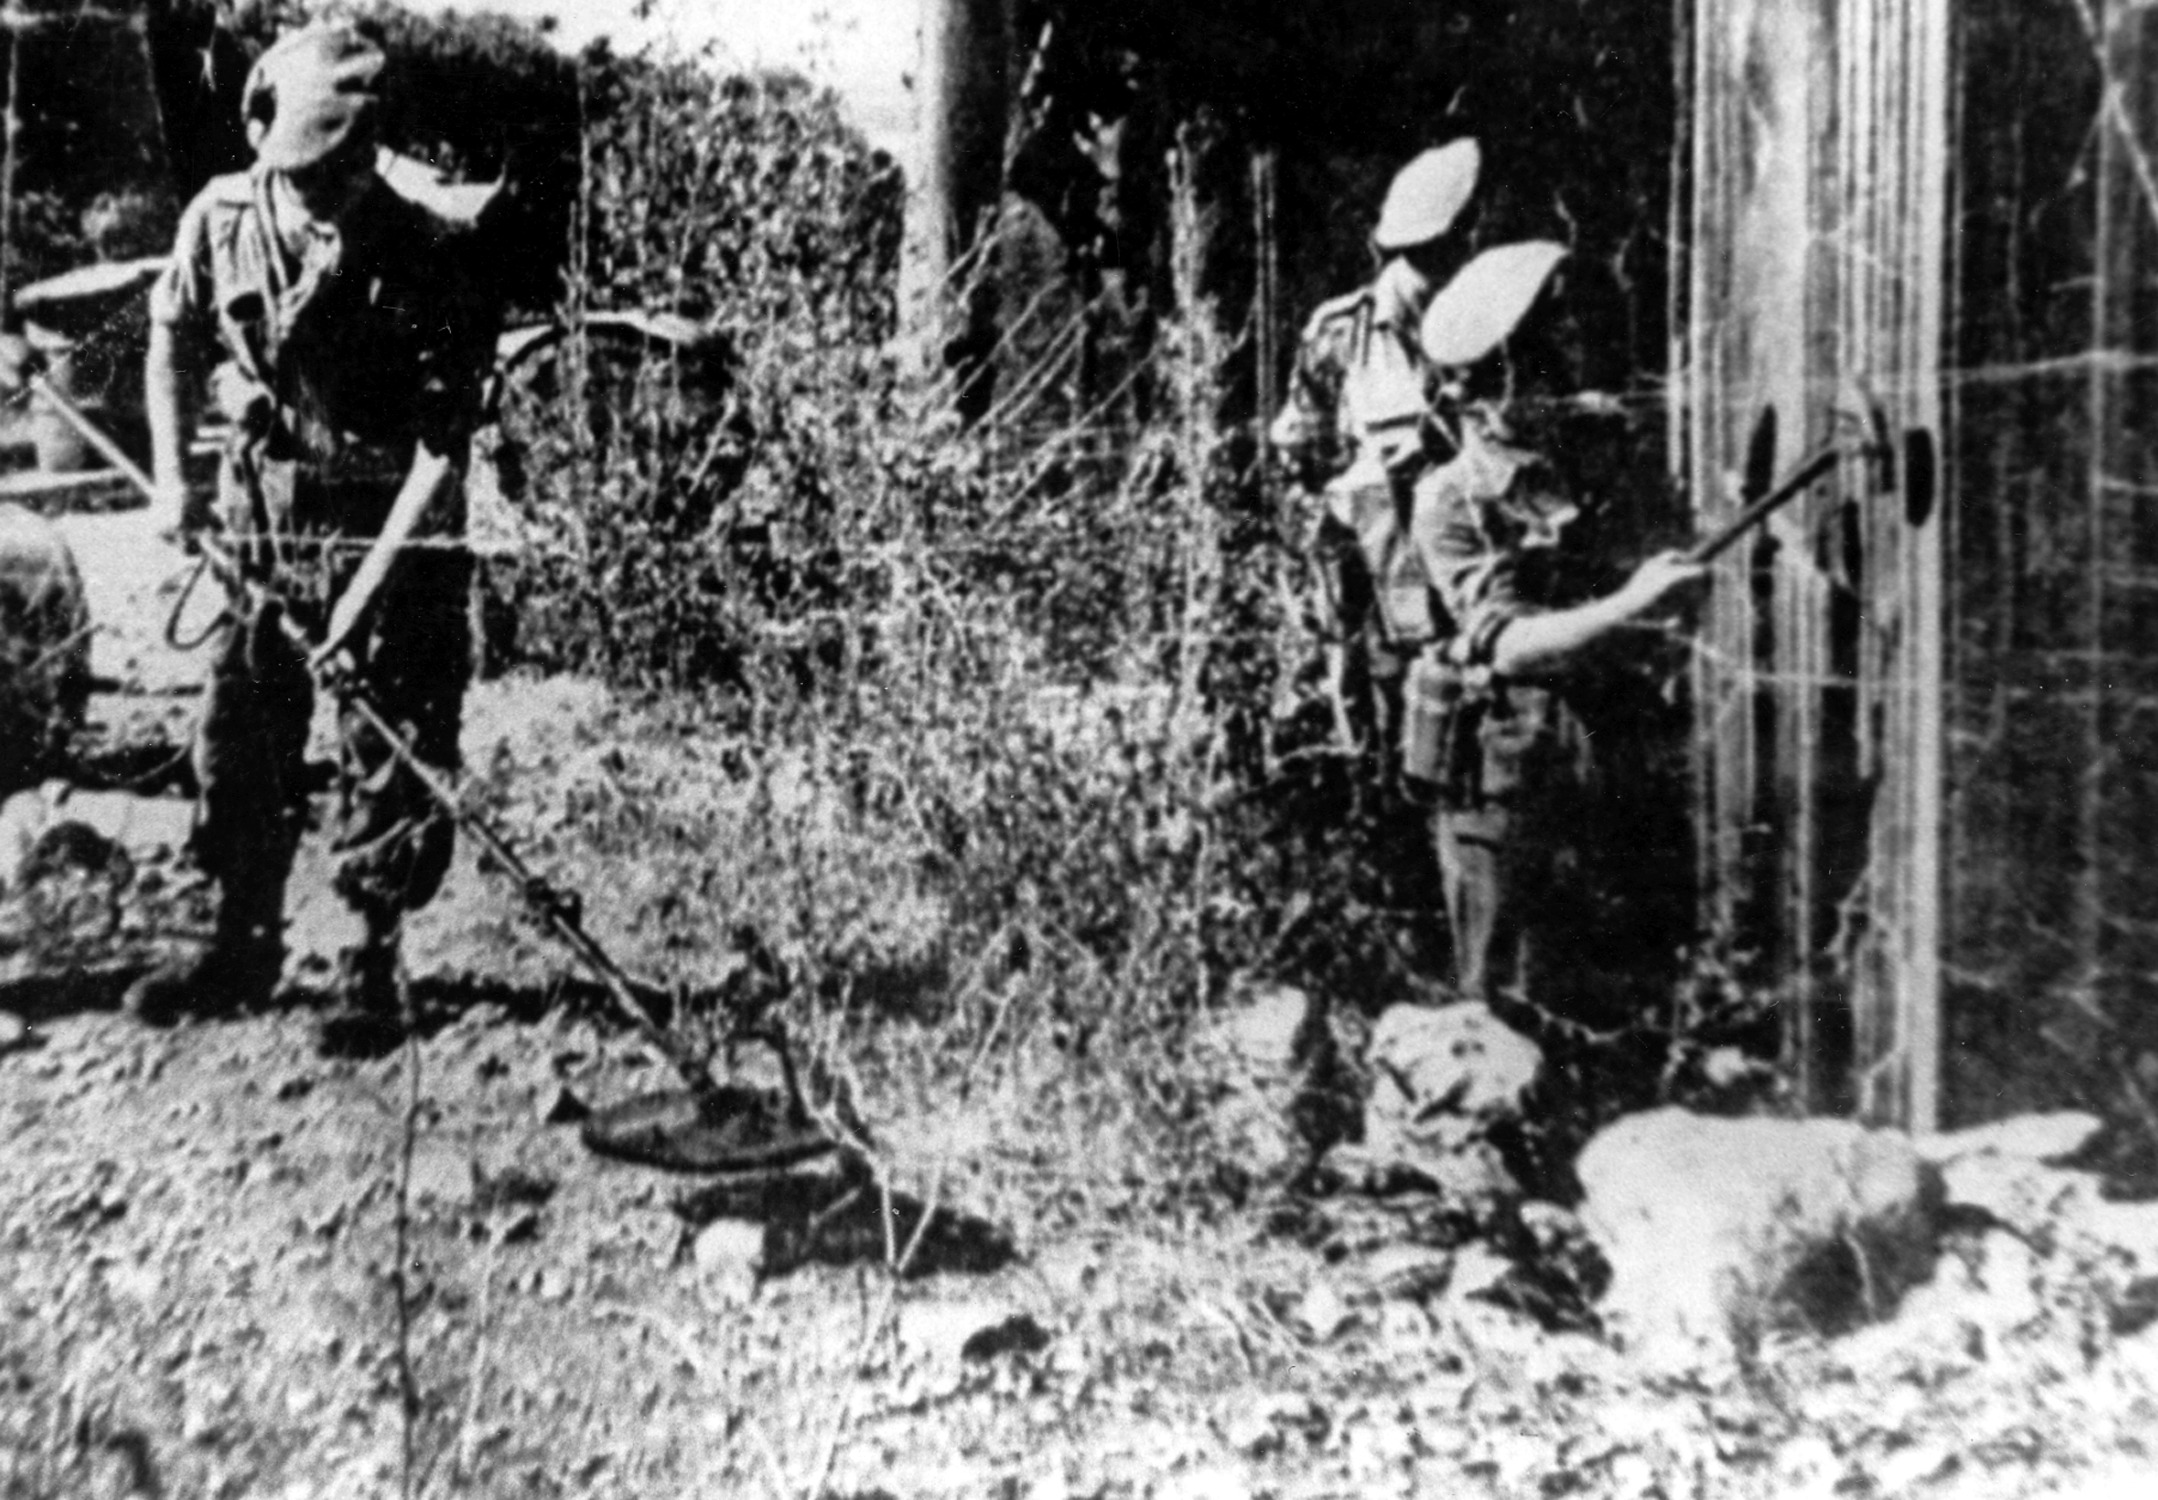 חיילים בריטים מחפשים אחר מצבורי נשק באמצעות מכשירים לגילוי מוקשים, קיבוץ יגור, 29.06.1946